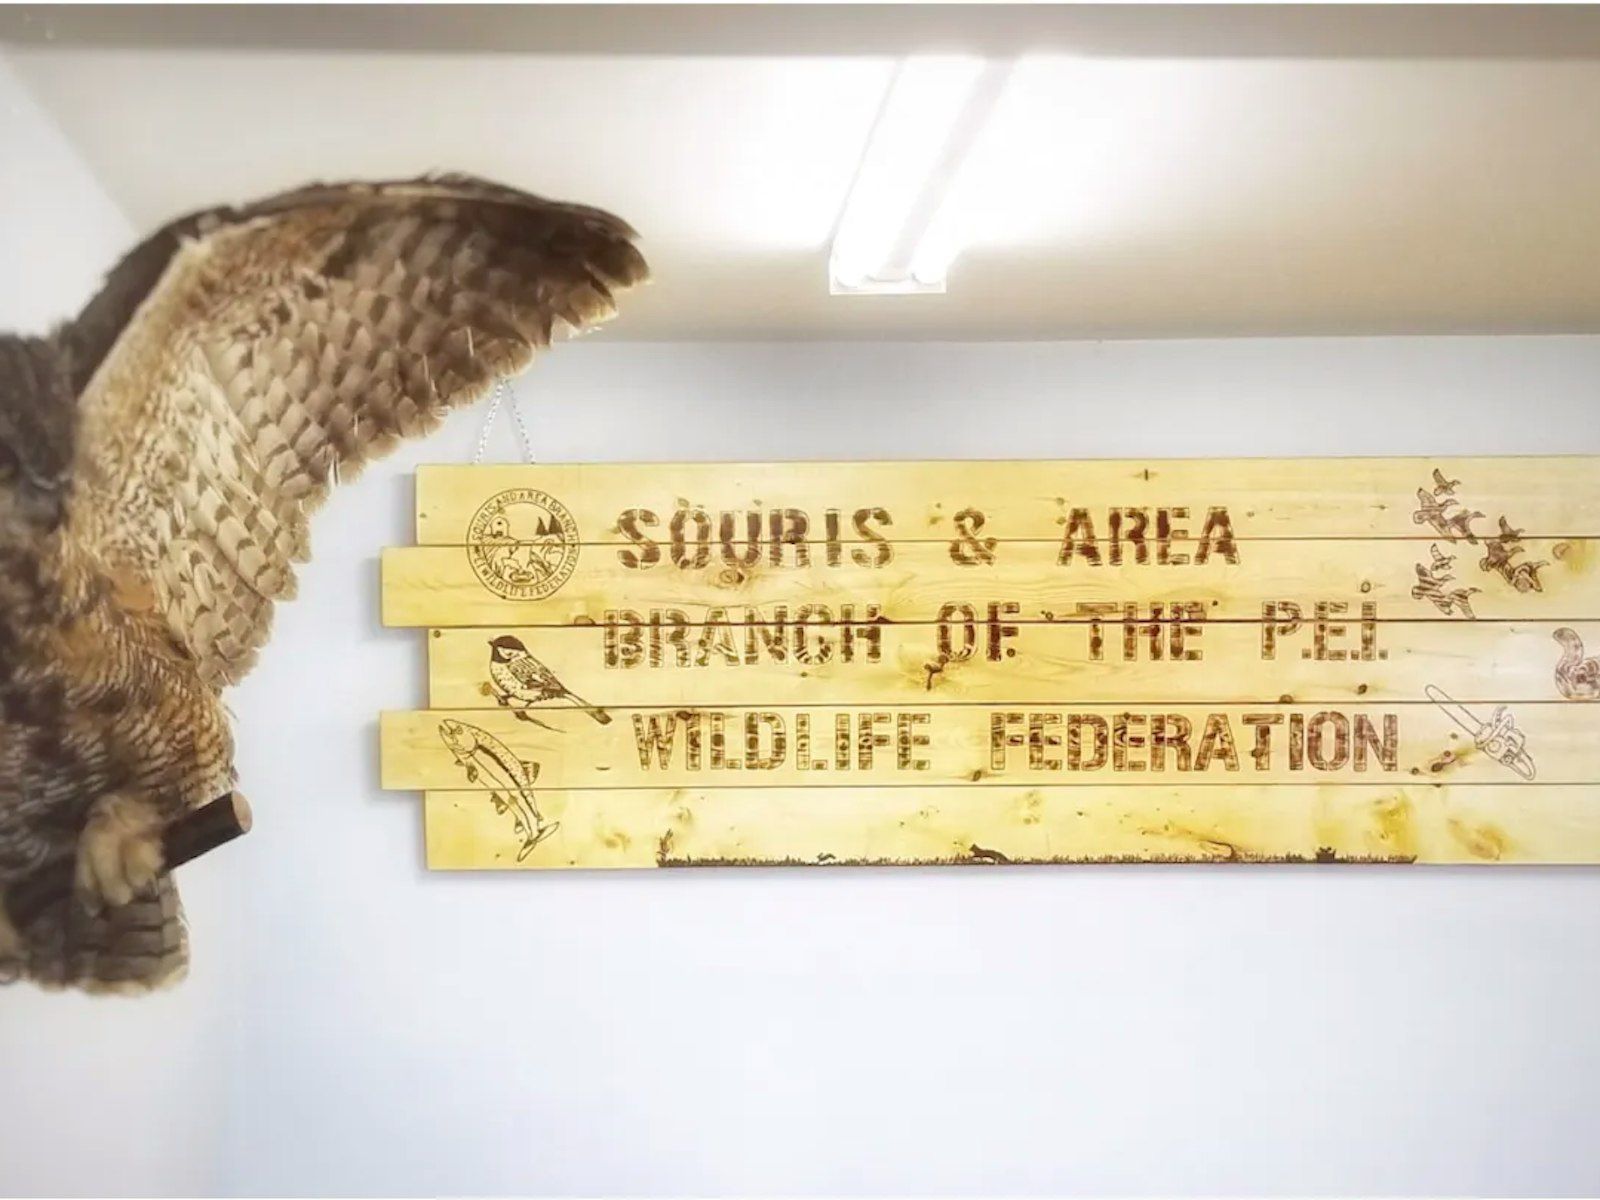 Panneau en bois lisant 'Souris & Area Branch of the PEI Wildlife Federation'